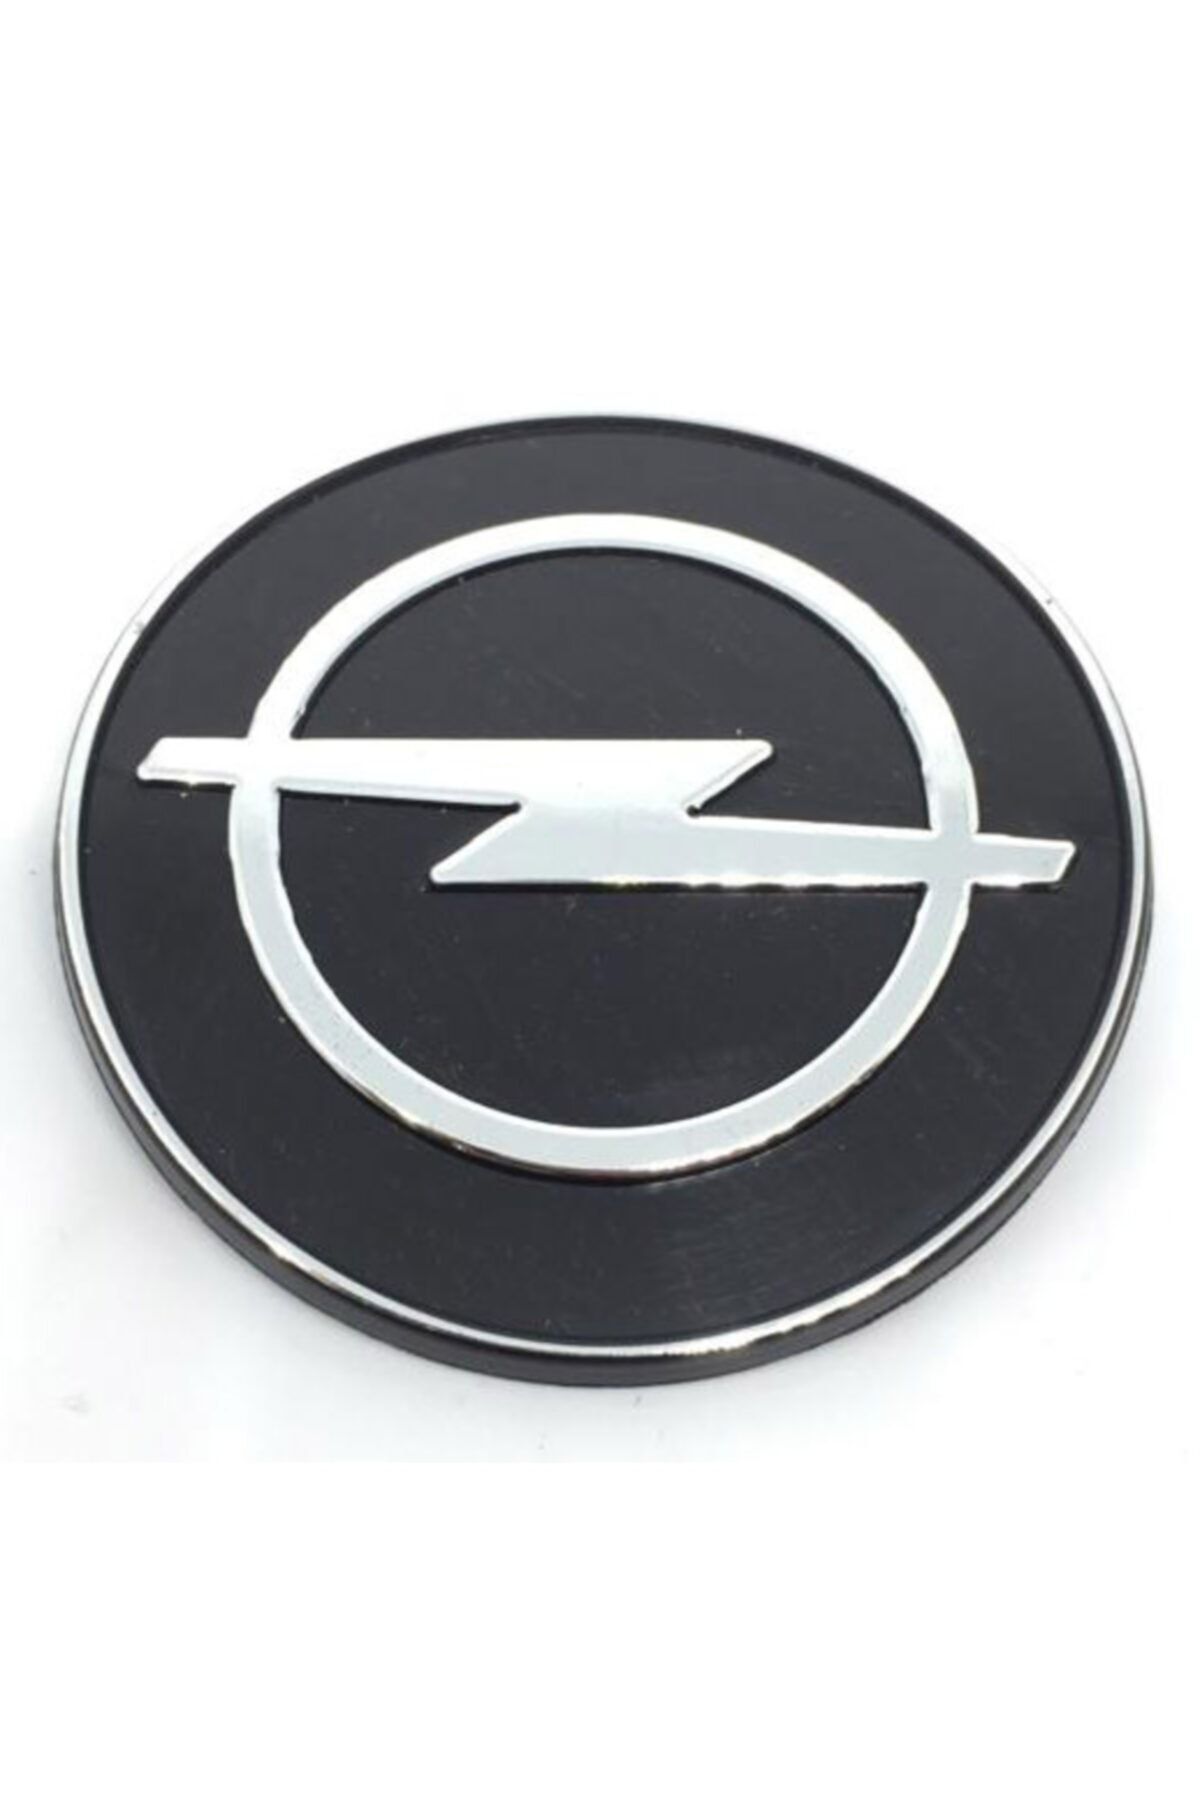 İthal Opel Vectra A Kaput Arması Amblemi 1988 - 1992 1.sınıf Kaliteli Ürün